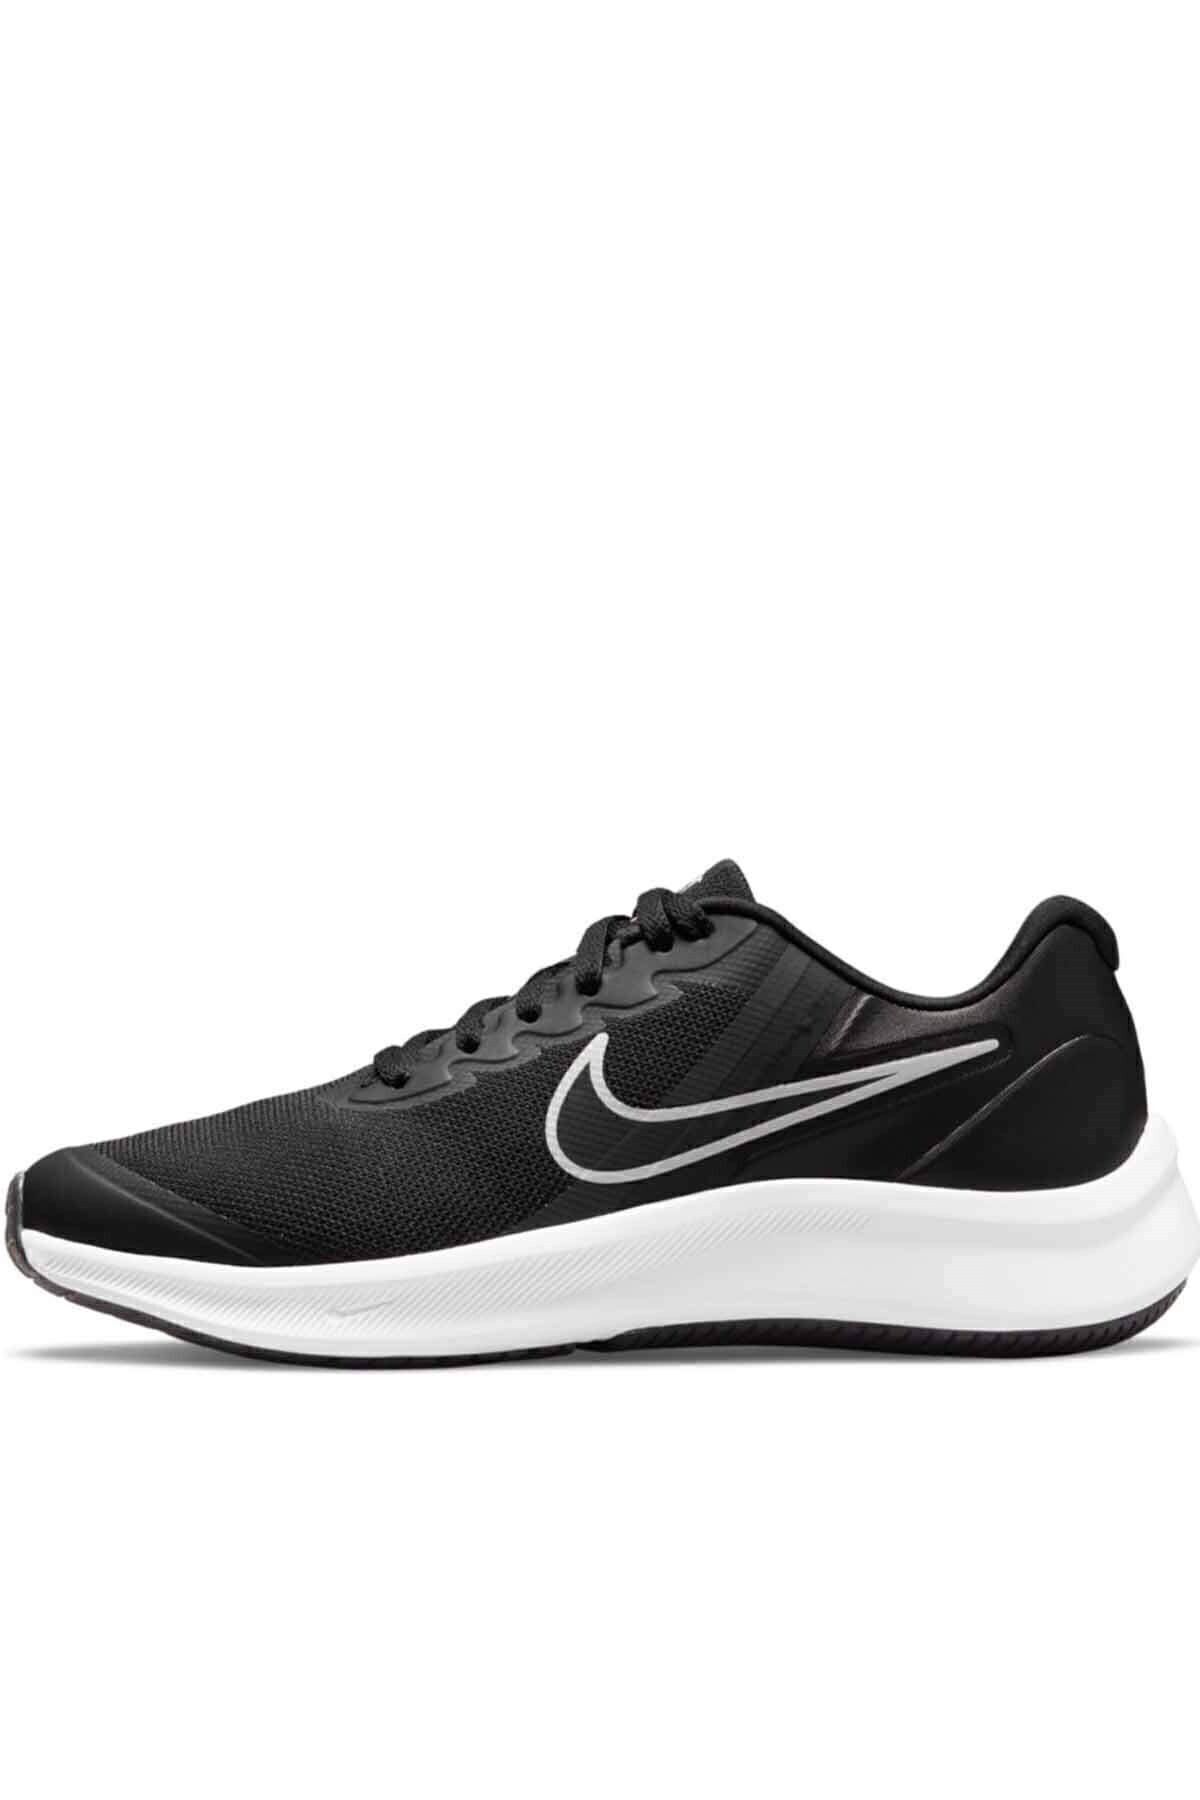 Nike Star Runner 3 (GS) Kadın Yürüyüş Koşu Ayakkabı Da2776-003-syhbyz